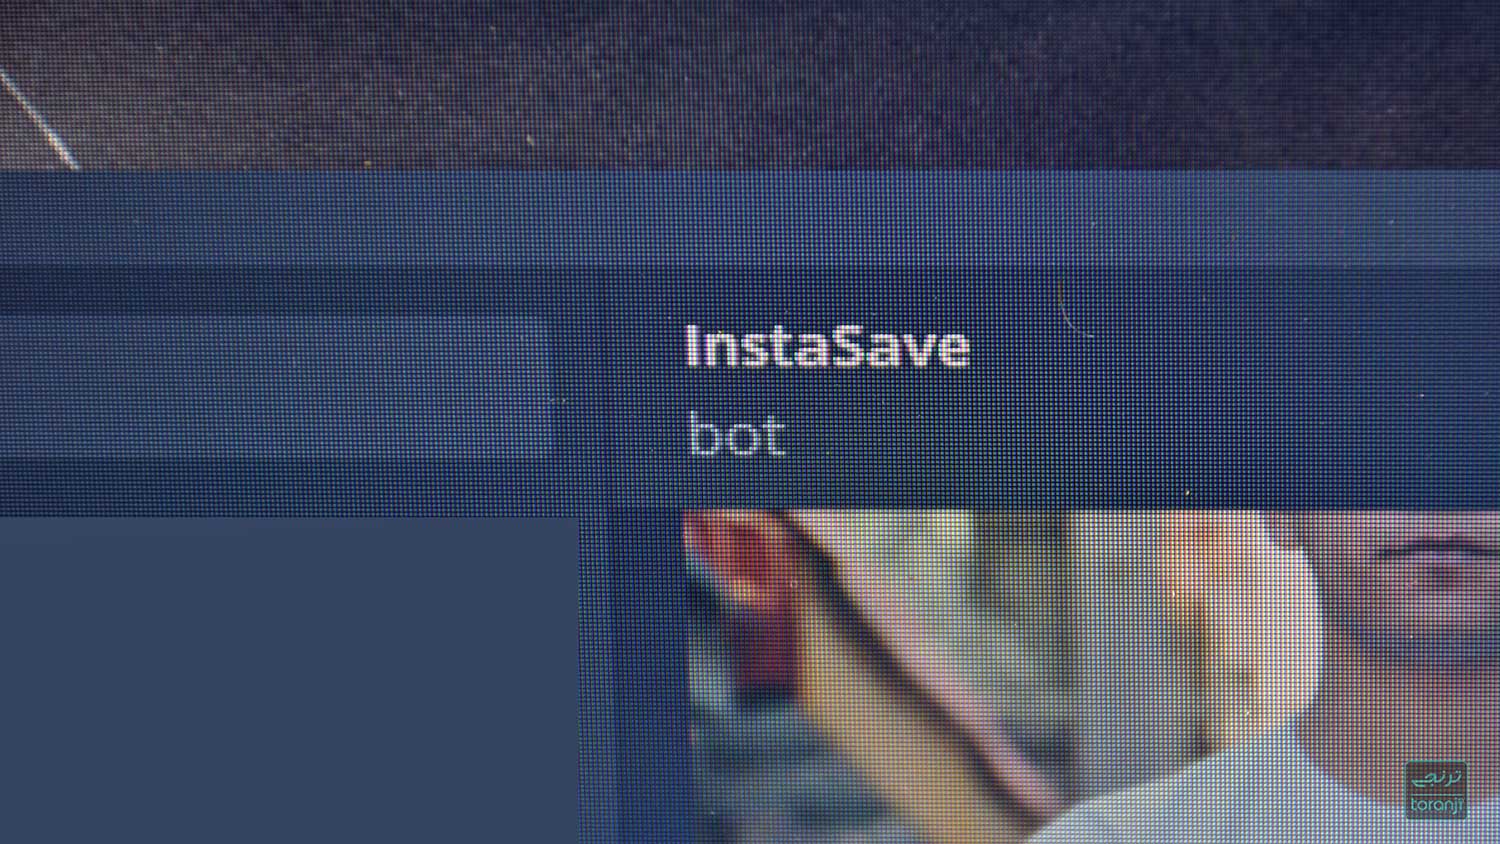 دانلود تصویر پروفایل اینستاگرام و استوری ها با ربات InstaSave تلگرام